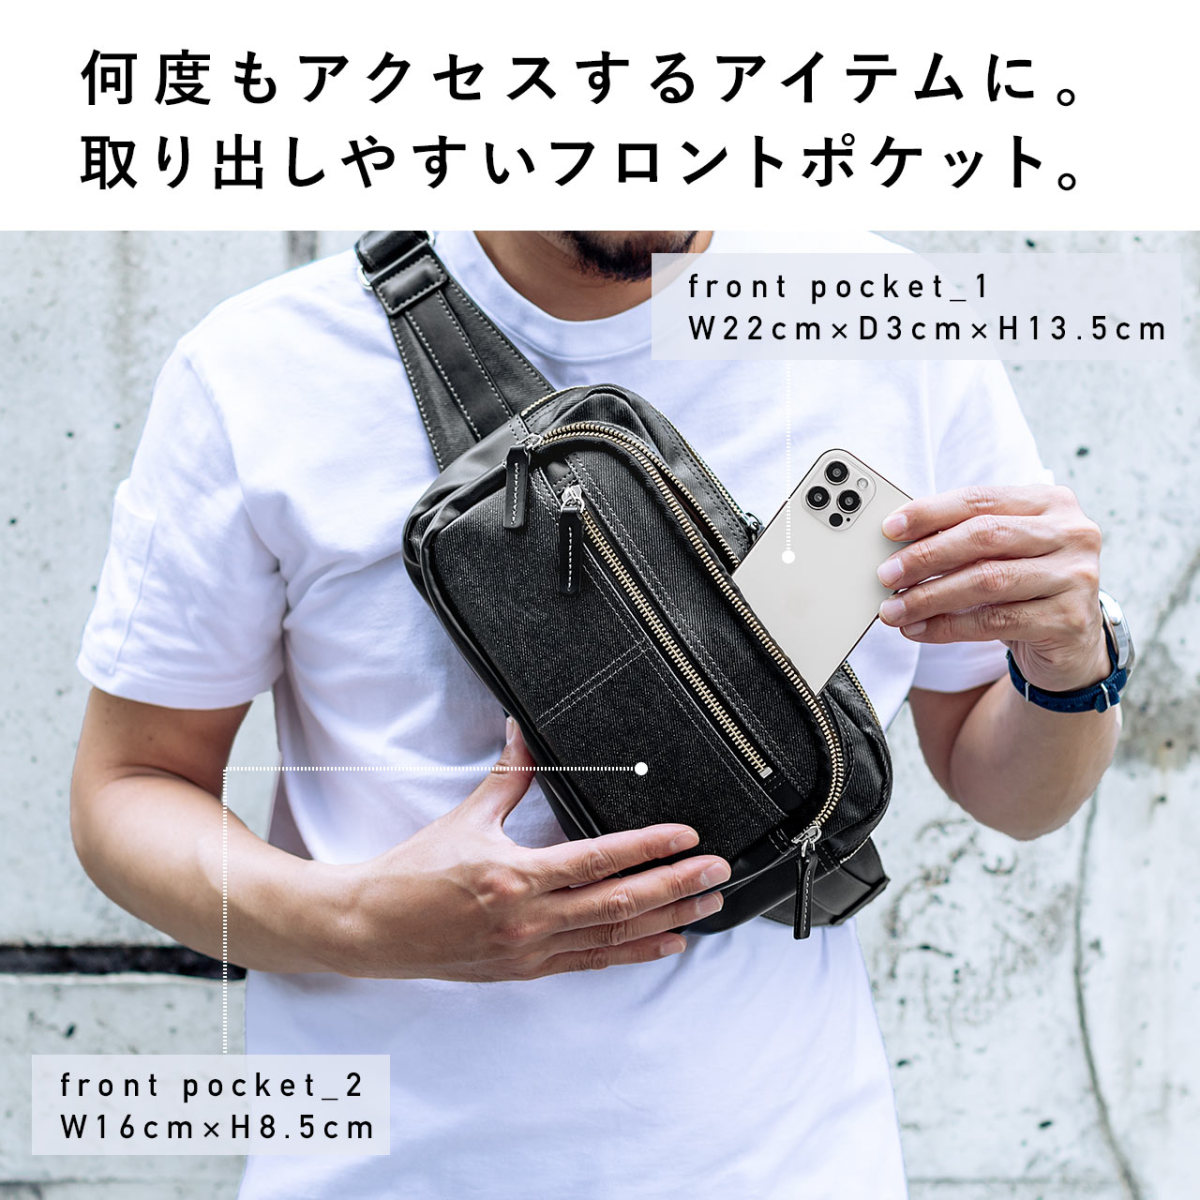 ボディバッグ メンズ ショルダーバッグ 簡易防水 撥水 日本製 豊岡鞄 デニム 斜めがけ メッセンジャー ウエストポーチ 小さめ バック  200-BAGBDY2